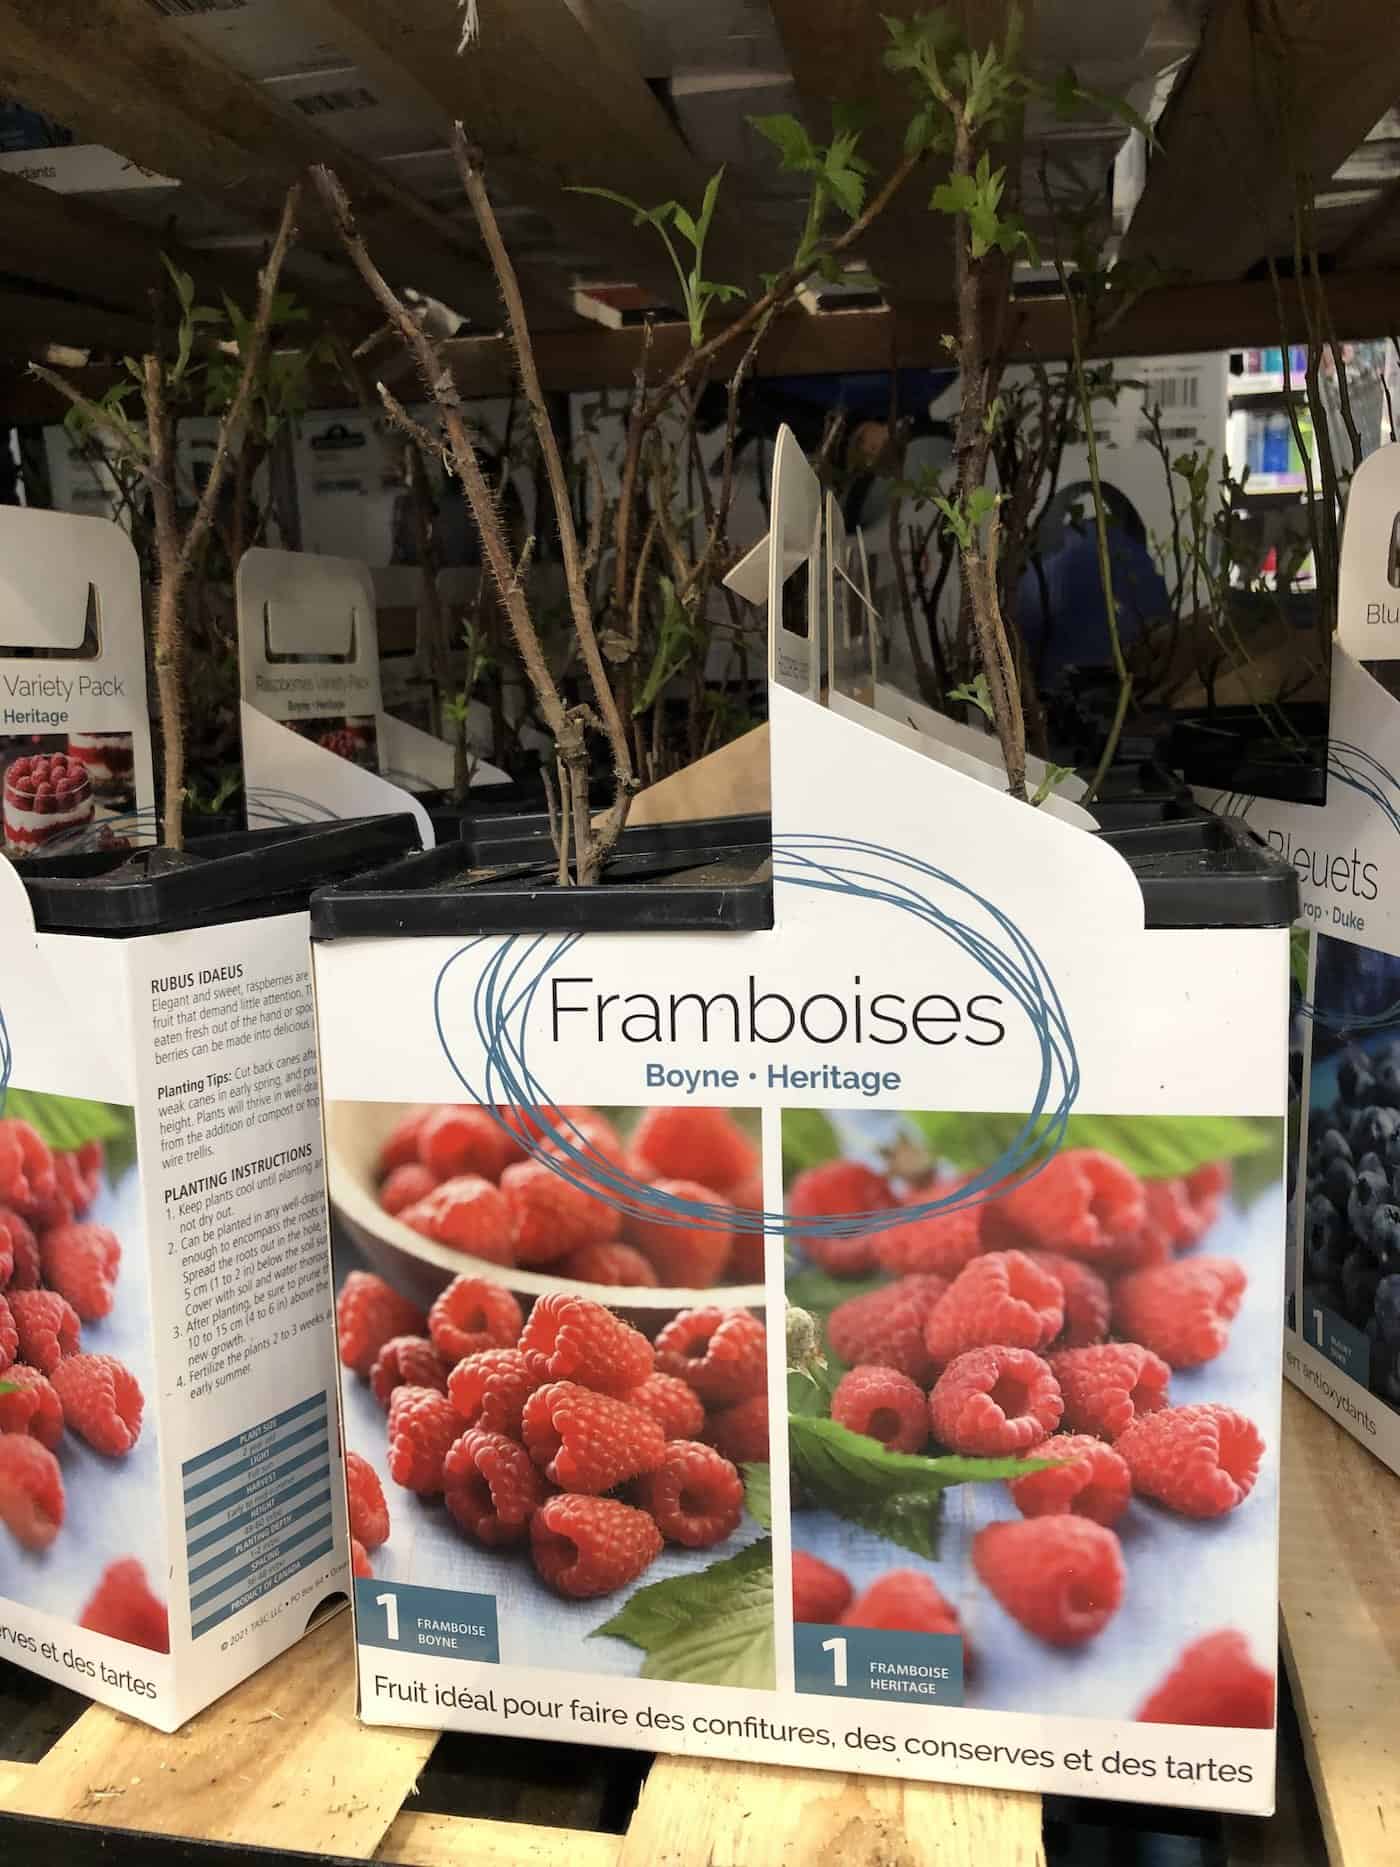 Raspberry plants at costco